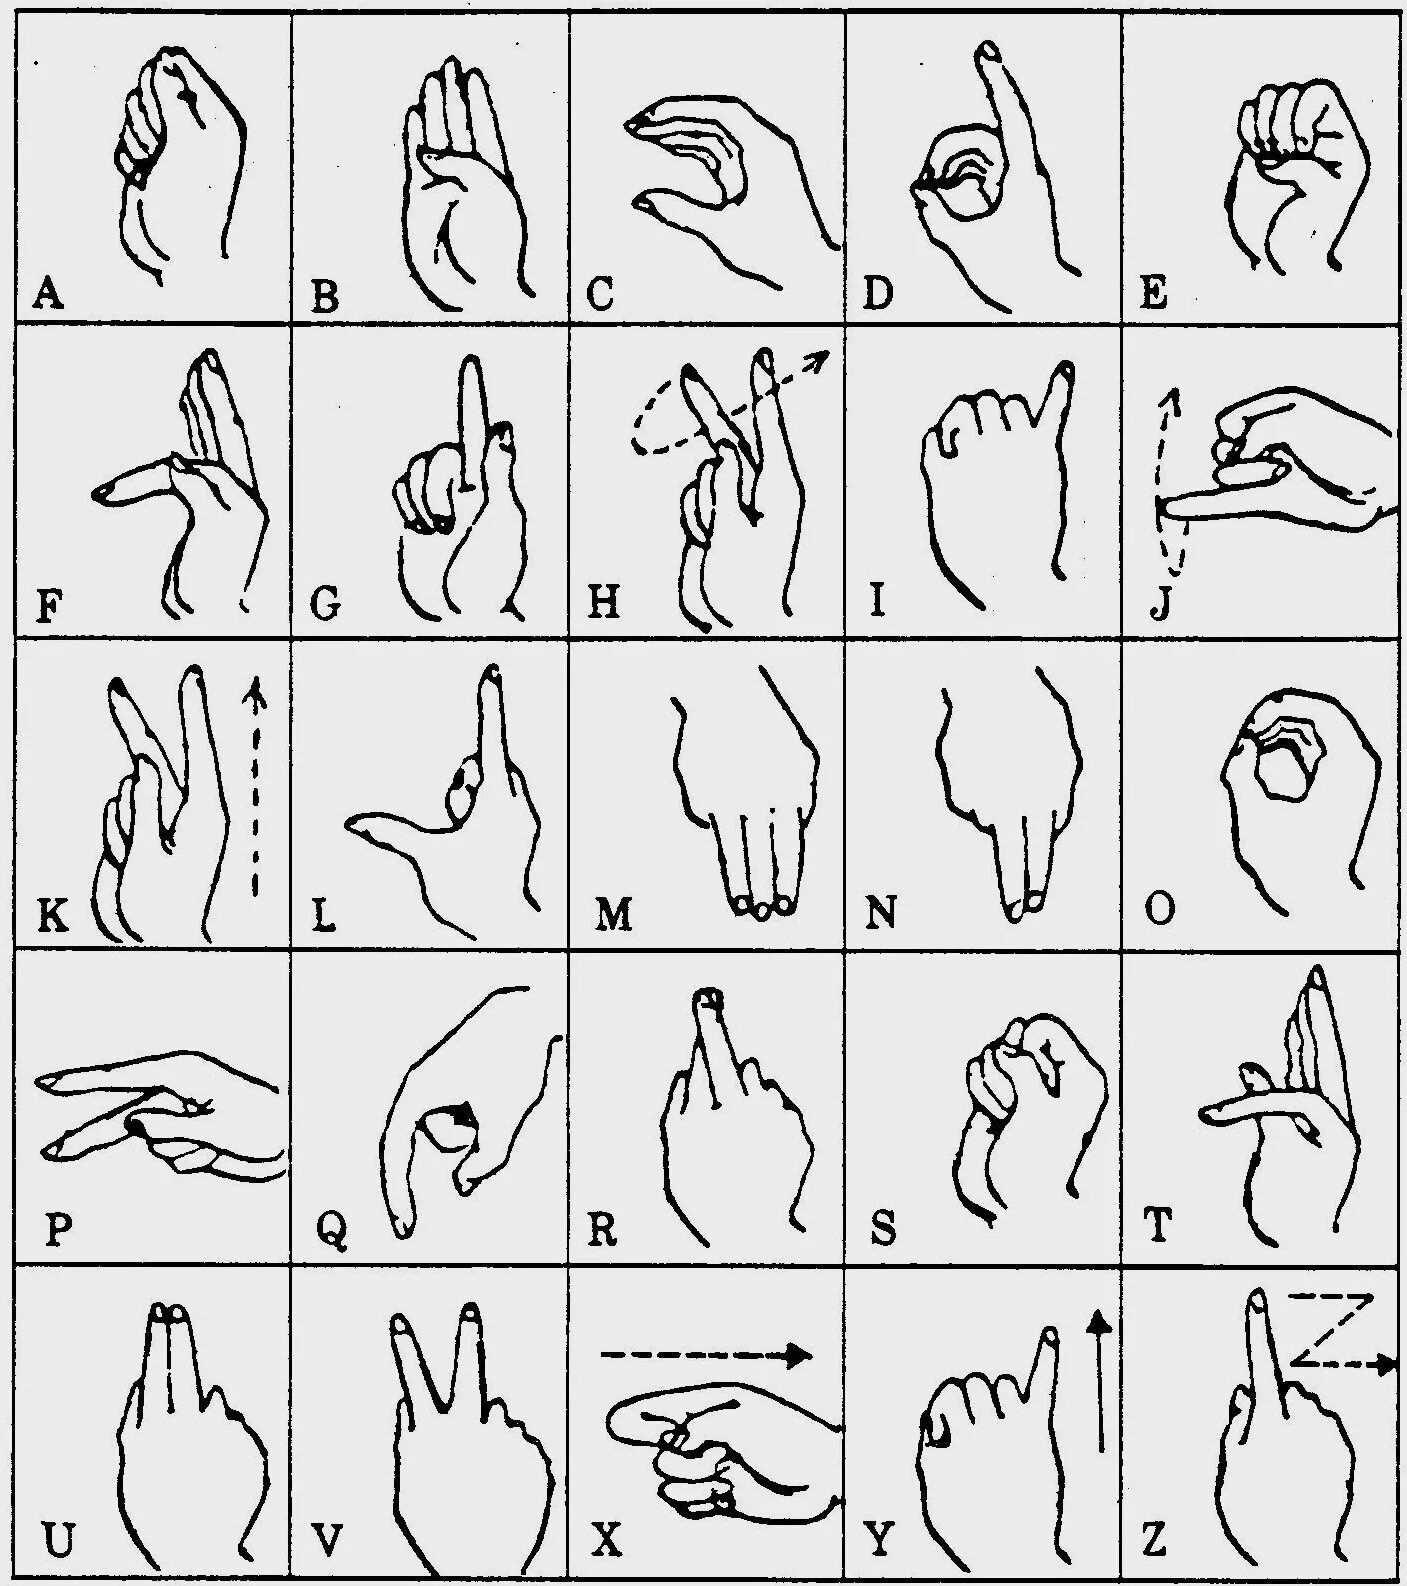 Глухой на английском. Дактильная Азбука глухих жесты. Дактильная Азбука язык алфавит английский язык. Английский жестовый язык дактиль. Дактильная Азбука глухих русский алфавит.